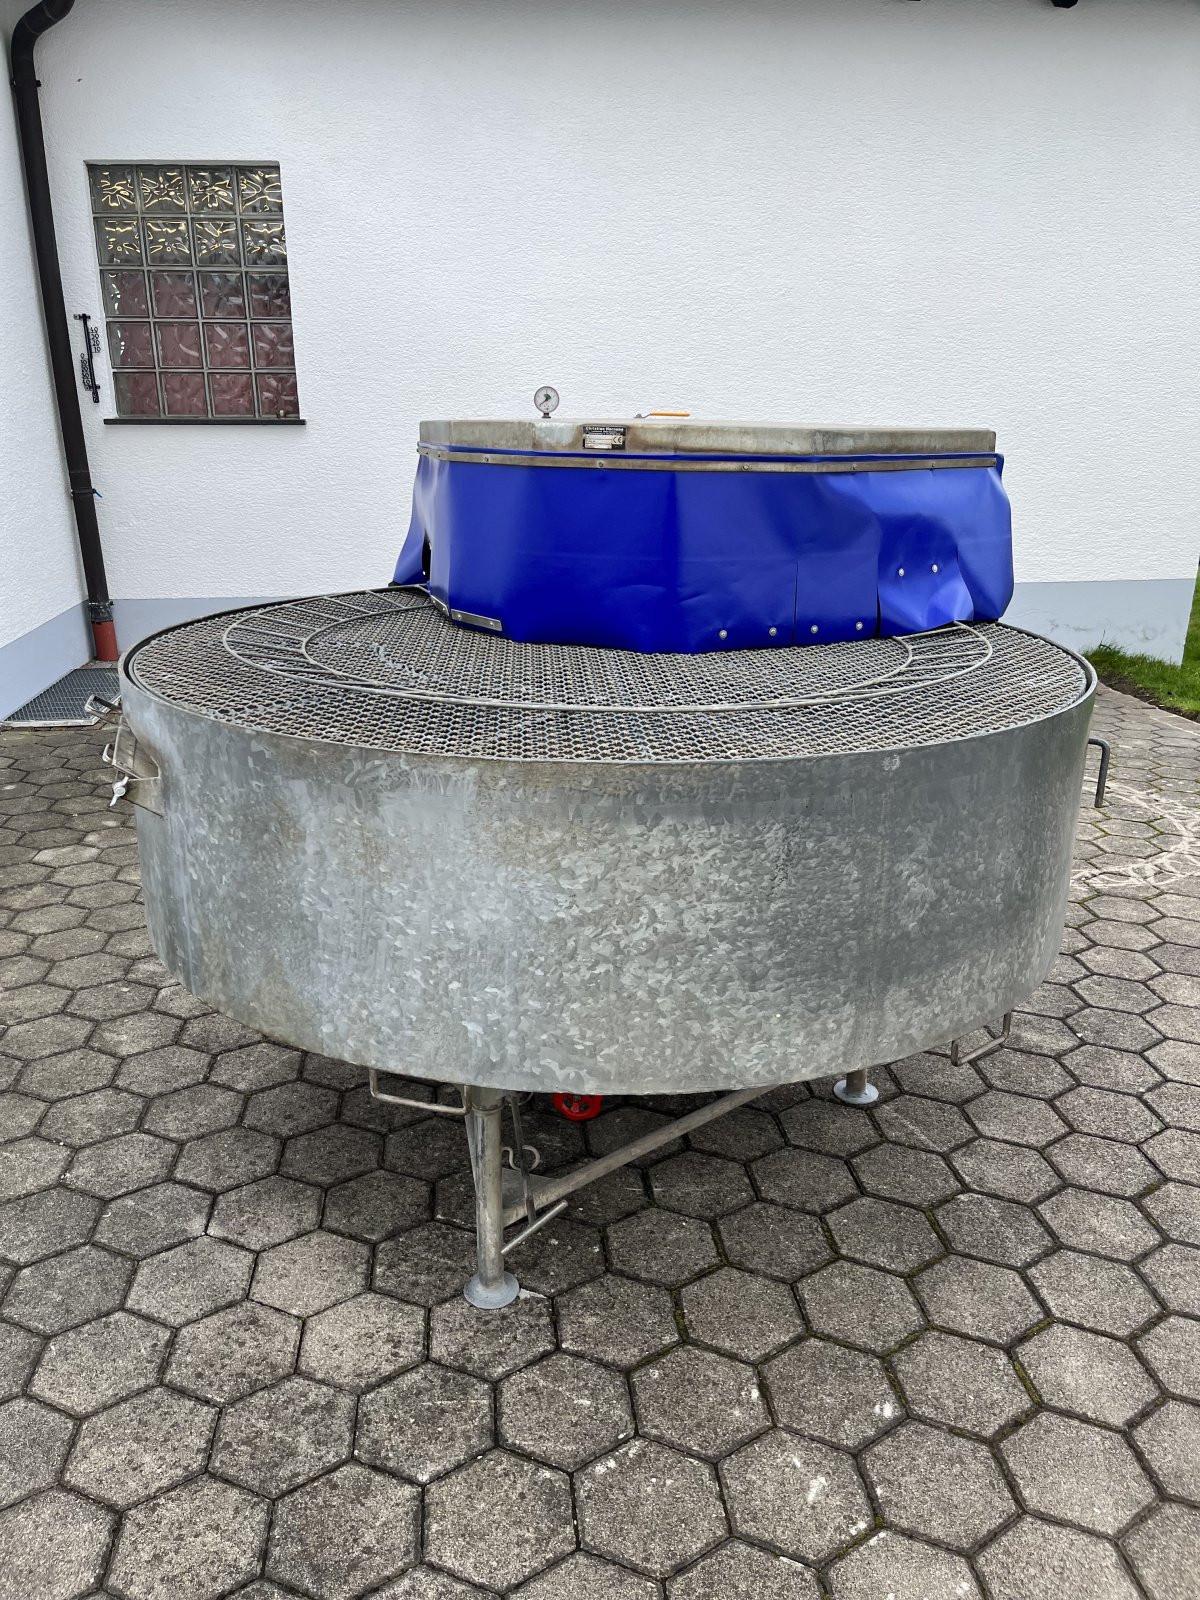 Waschmaschine a típus Hornung Gemüsewascher, Gebrauchtmaschine ekkor: Friedberg (Kép 1)